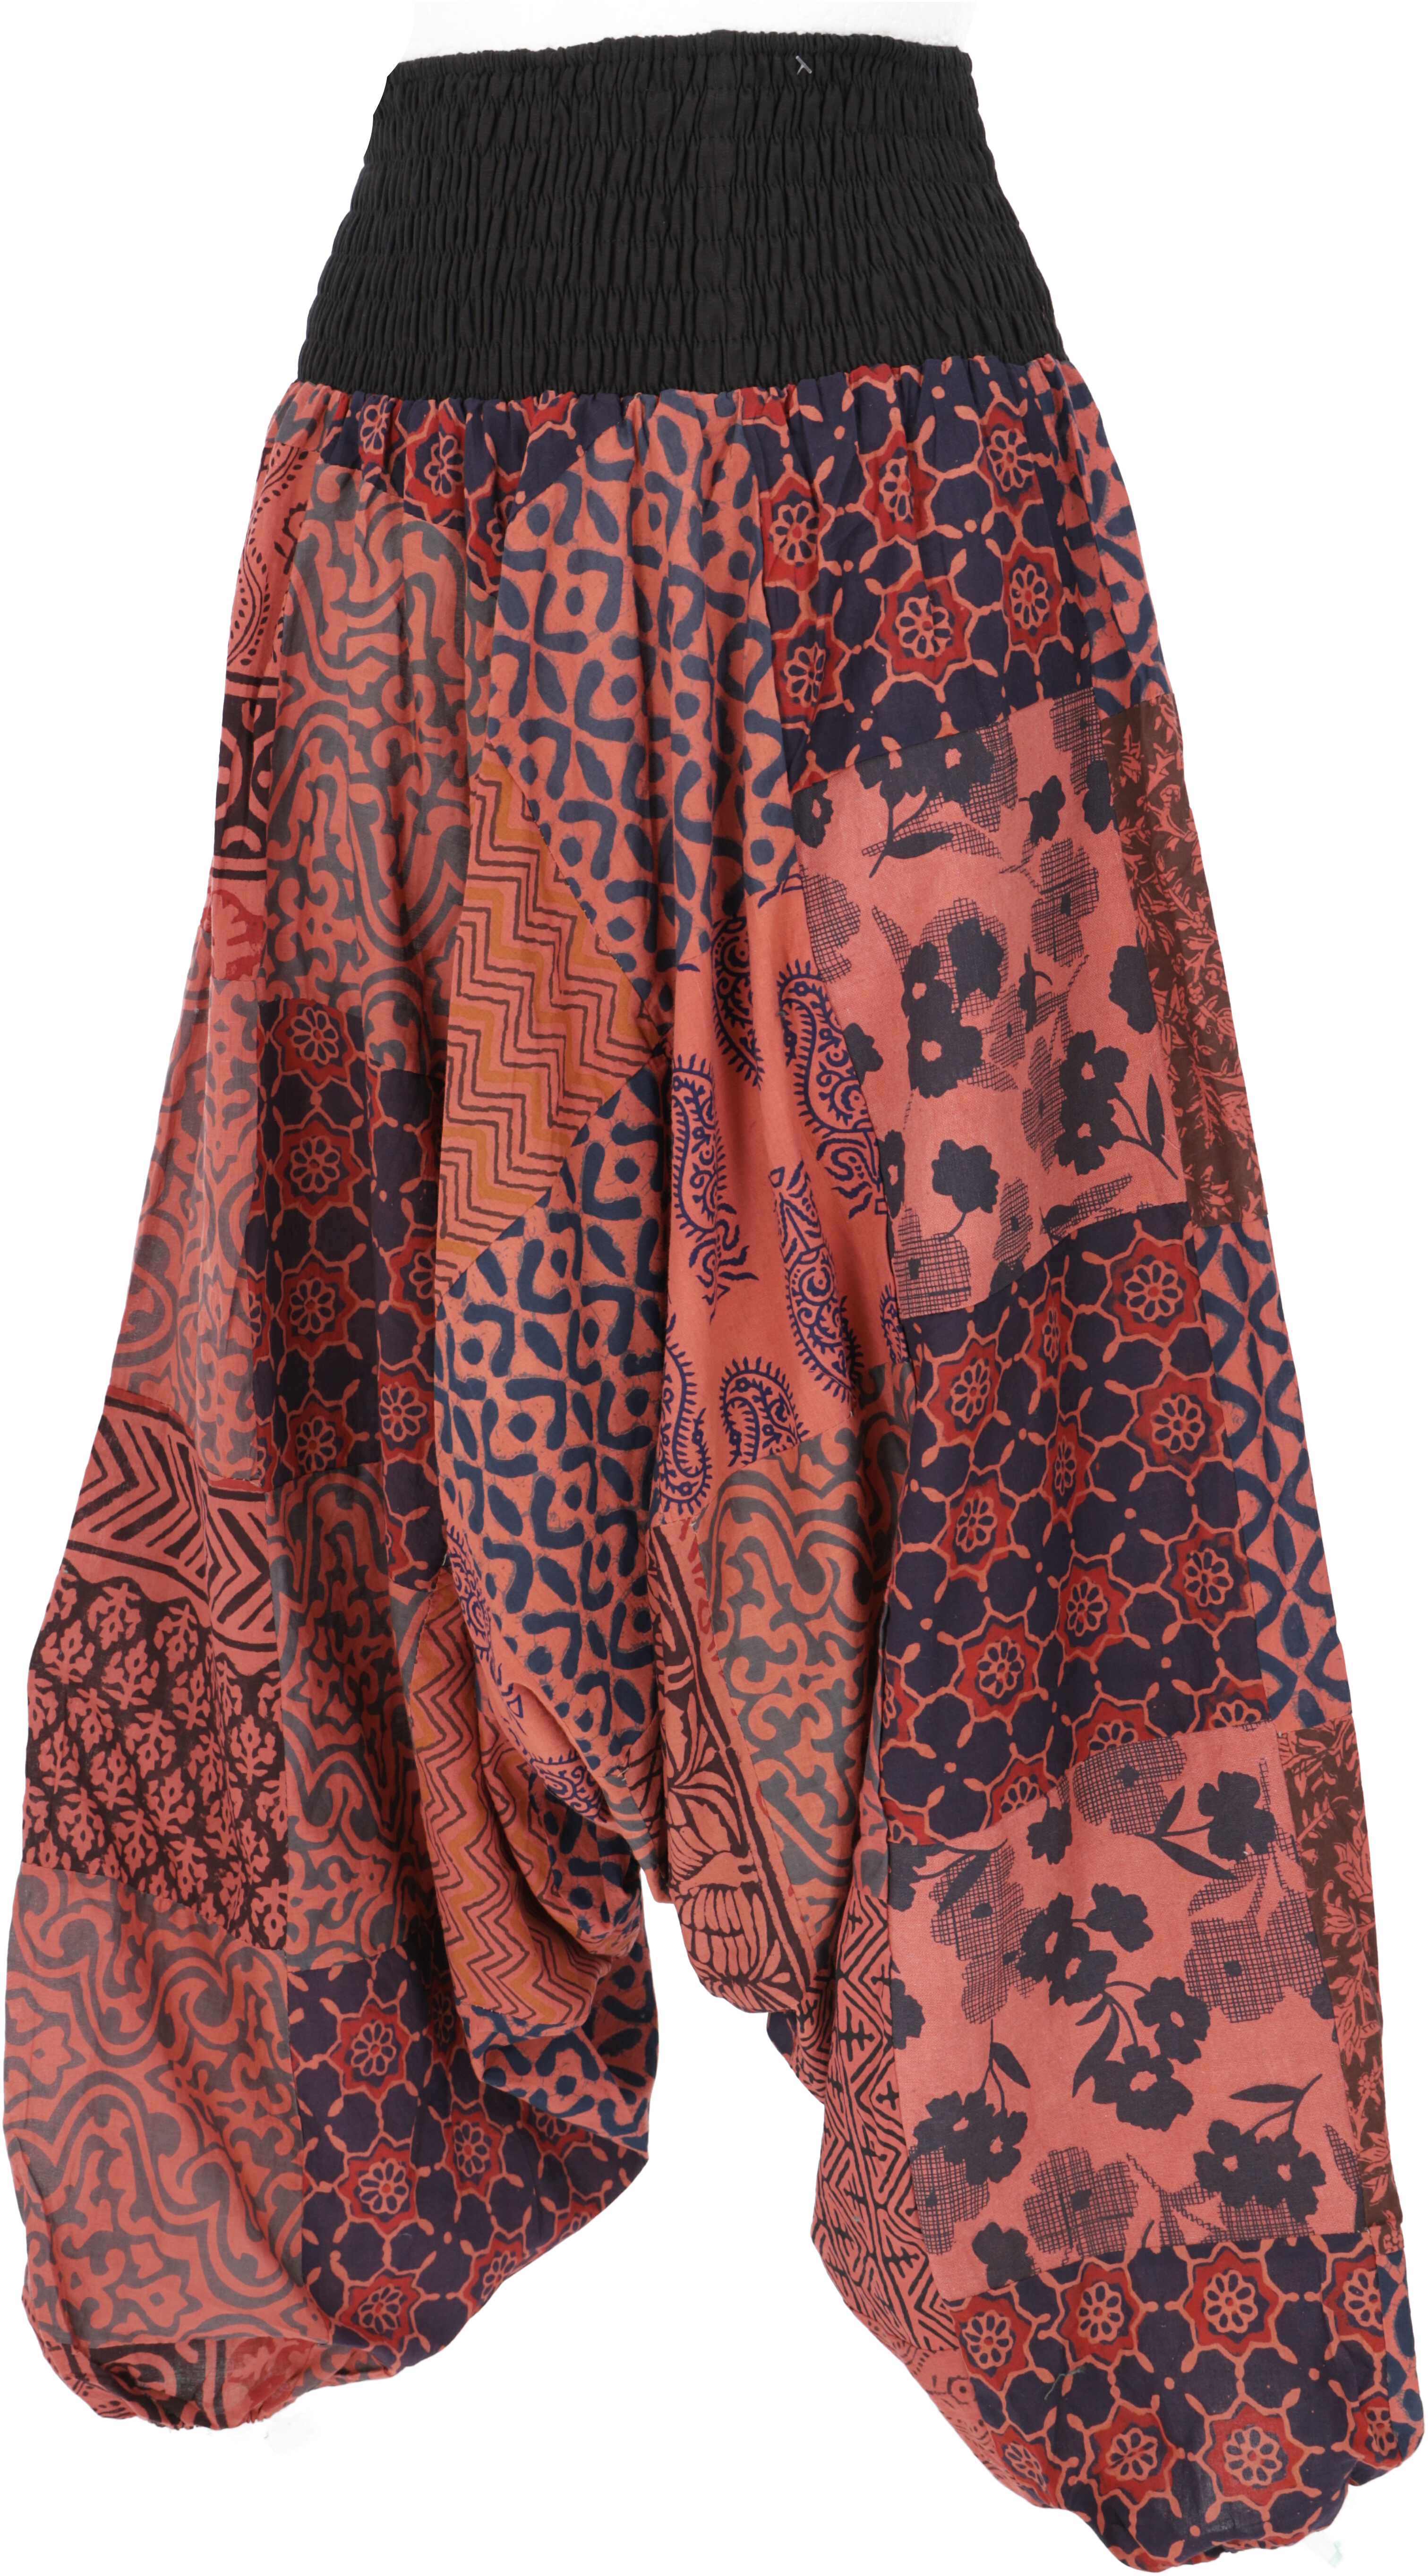 Schicke Aladinhose Besonders, für dein perfektes Hippie Outfit!